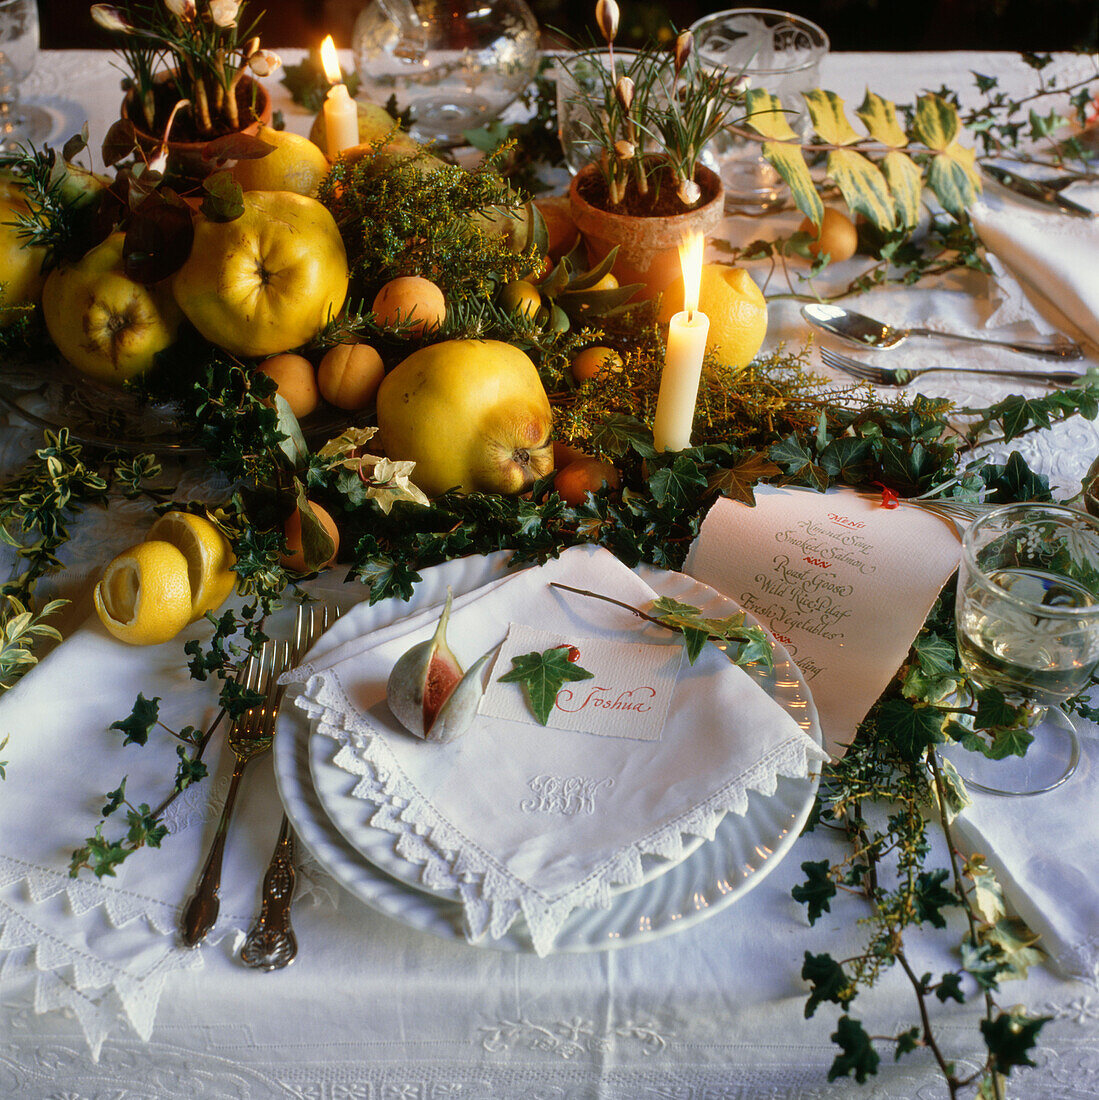 Herbstliche und winterliche Früchte auf dem Tisch mit Zweigen, Blättern und Kerzen